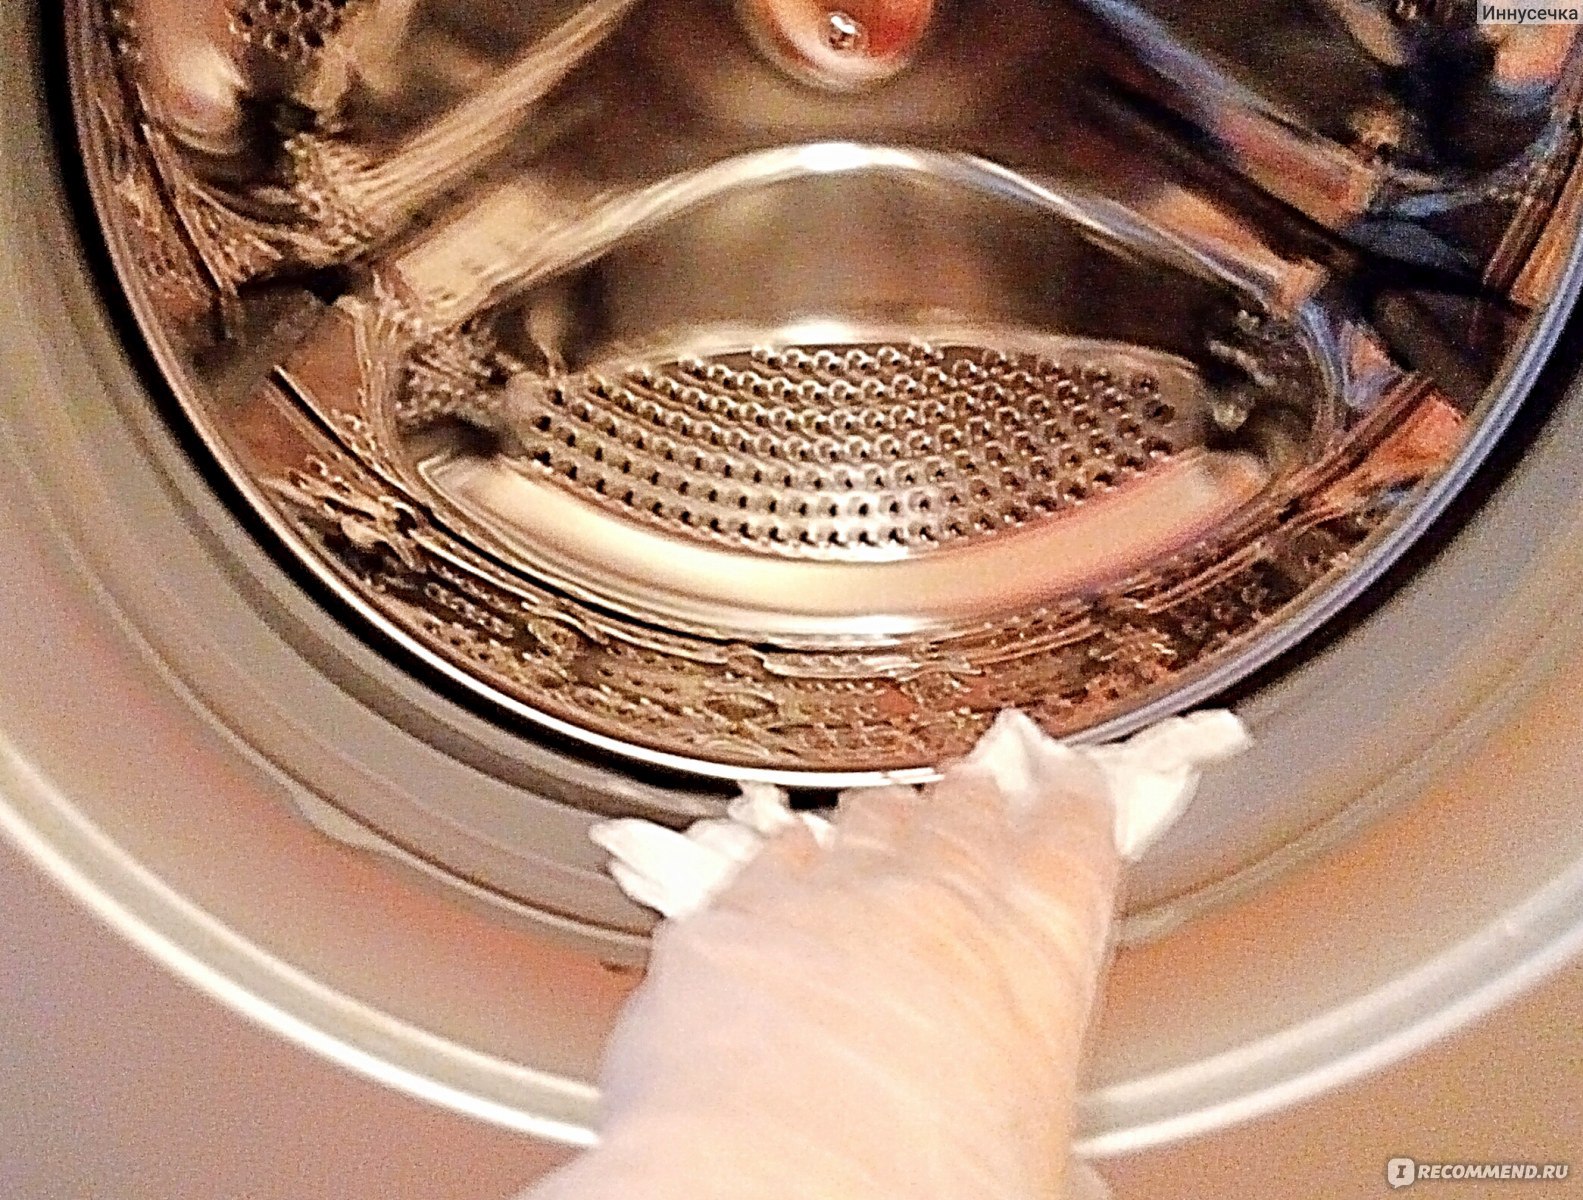 Пахнет стиральная машинка что делать. Барабан машинки. Чистка стиральной машины. Запах из стиральной машины средства. Пахнет из барабана стиральной машины.